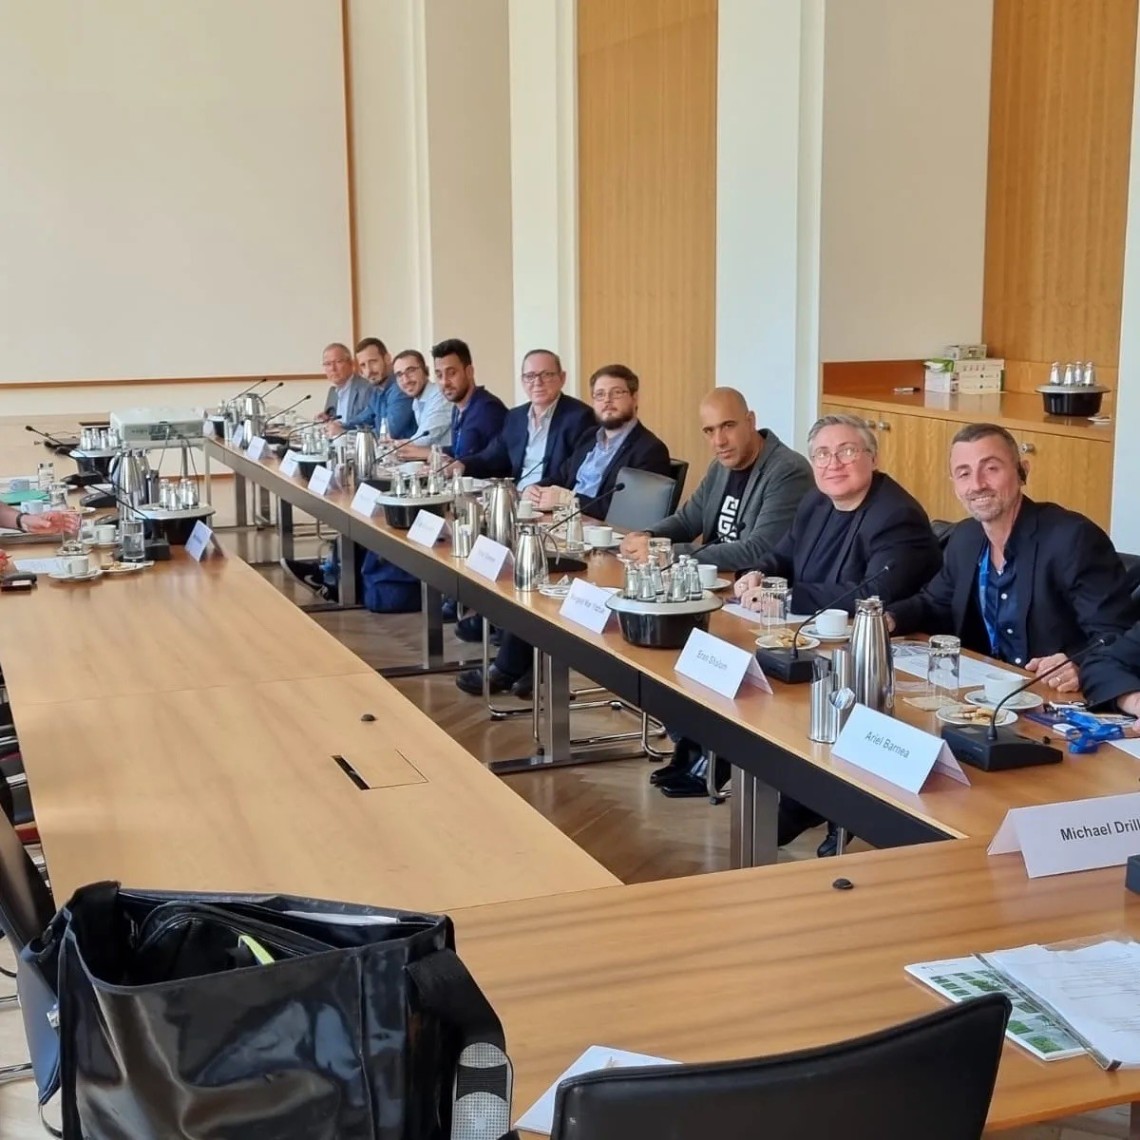 משלחת של ההסתדרות בנושא "שיתוף עובדים" ערכה ביקור עבודה בגרמניה